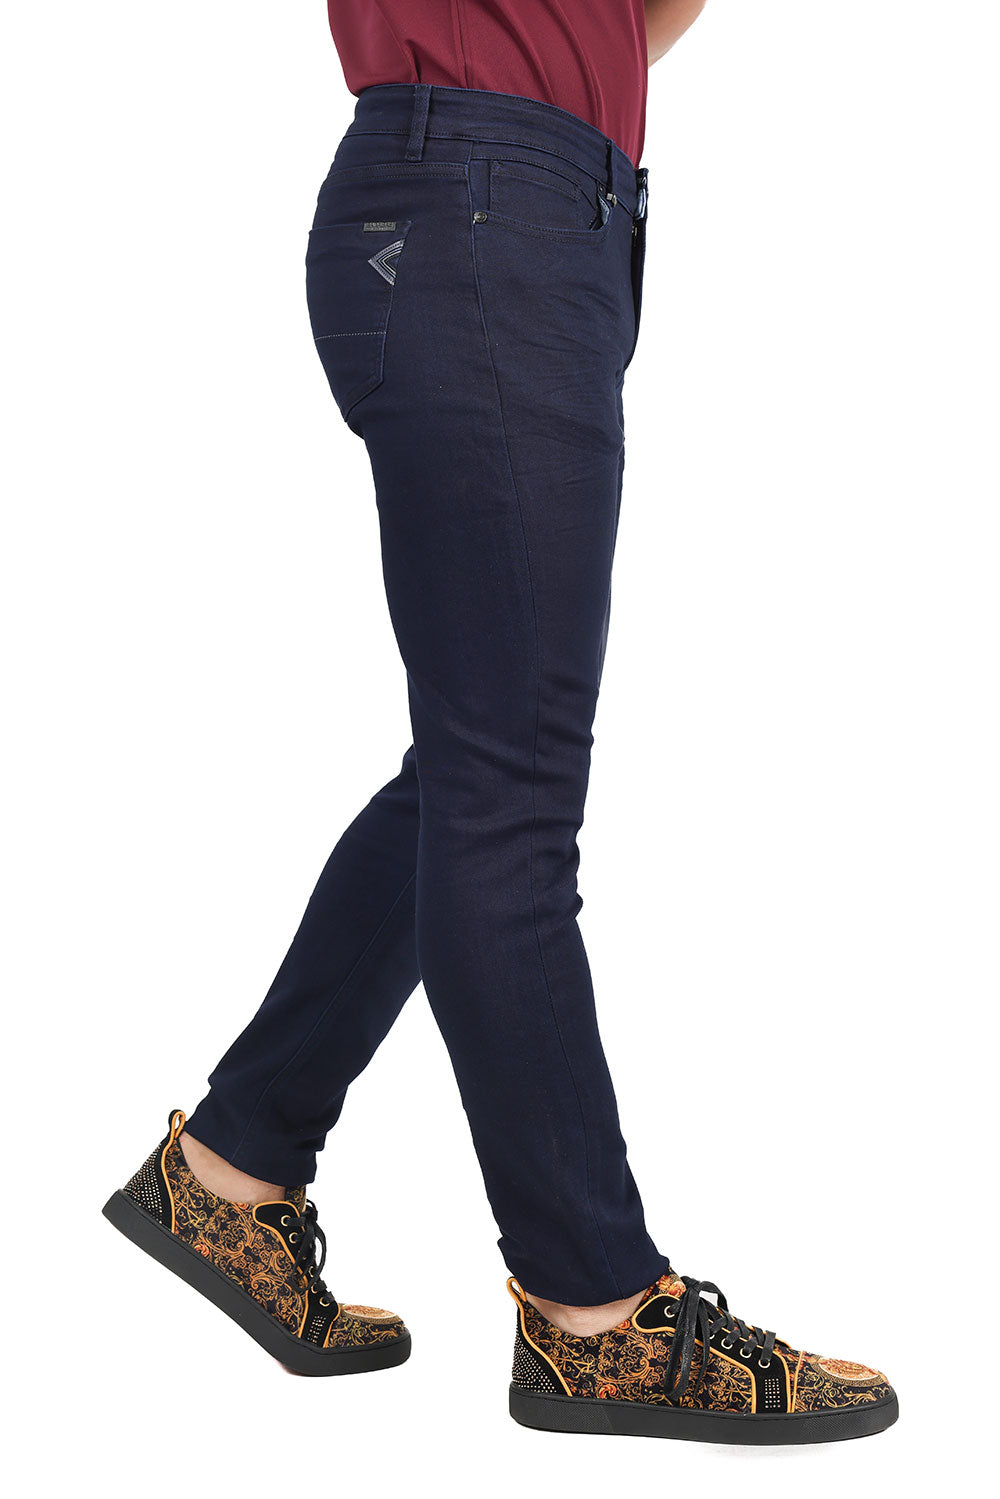 Barabas Men's Skinny Fit Classic Denim Solid Color Jeans 1700 Navy